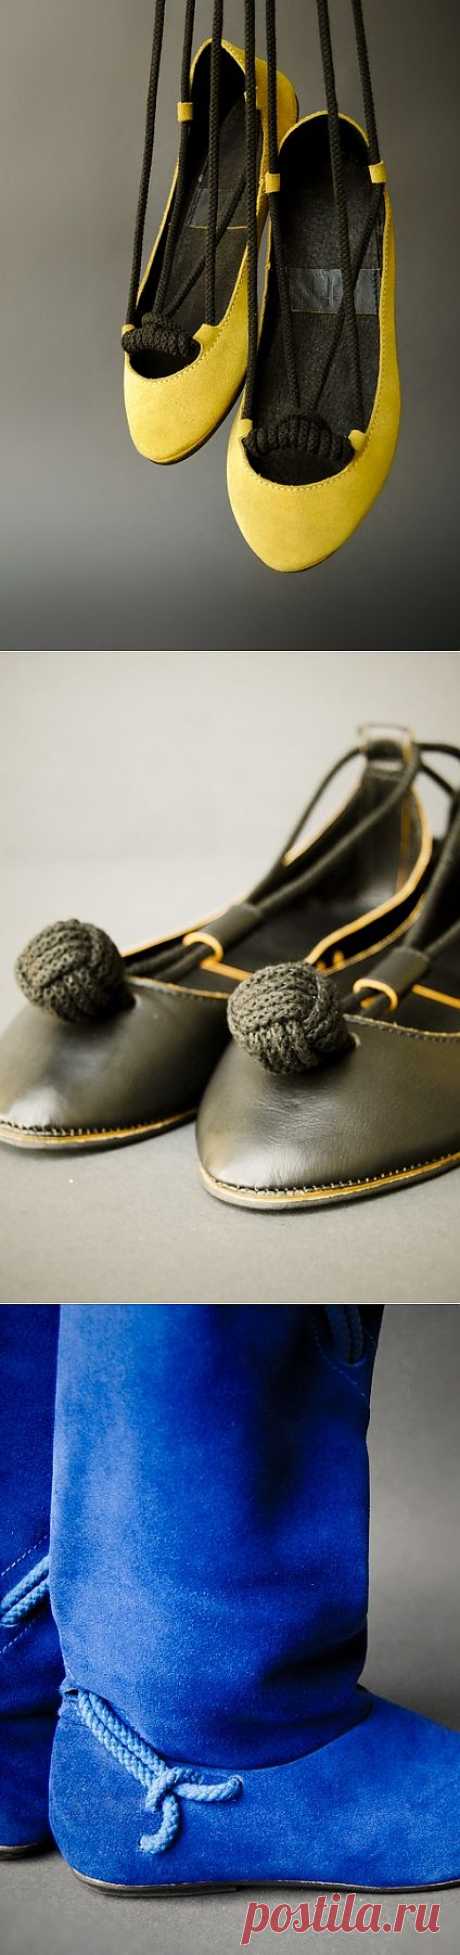 Обувь+веревка / Обувь / Модный сайт о стильной переделке одежды и интерьера